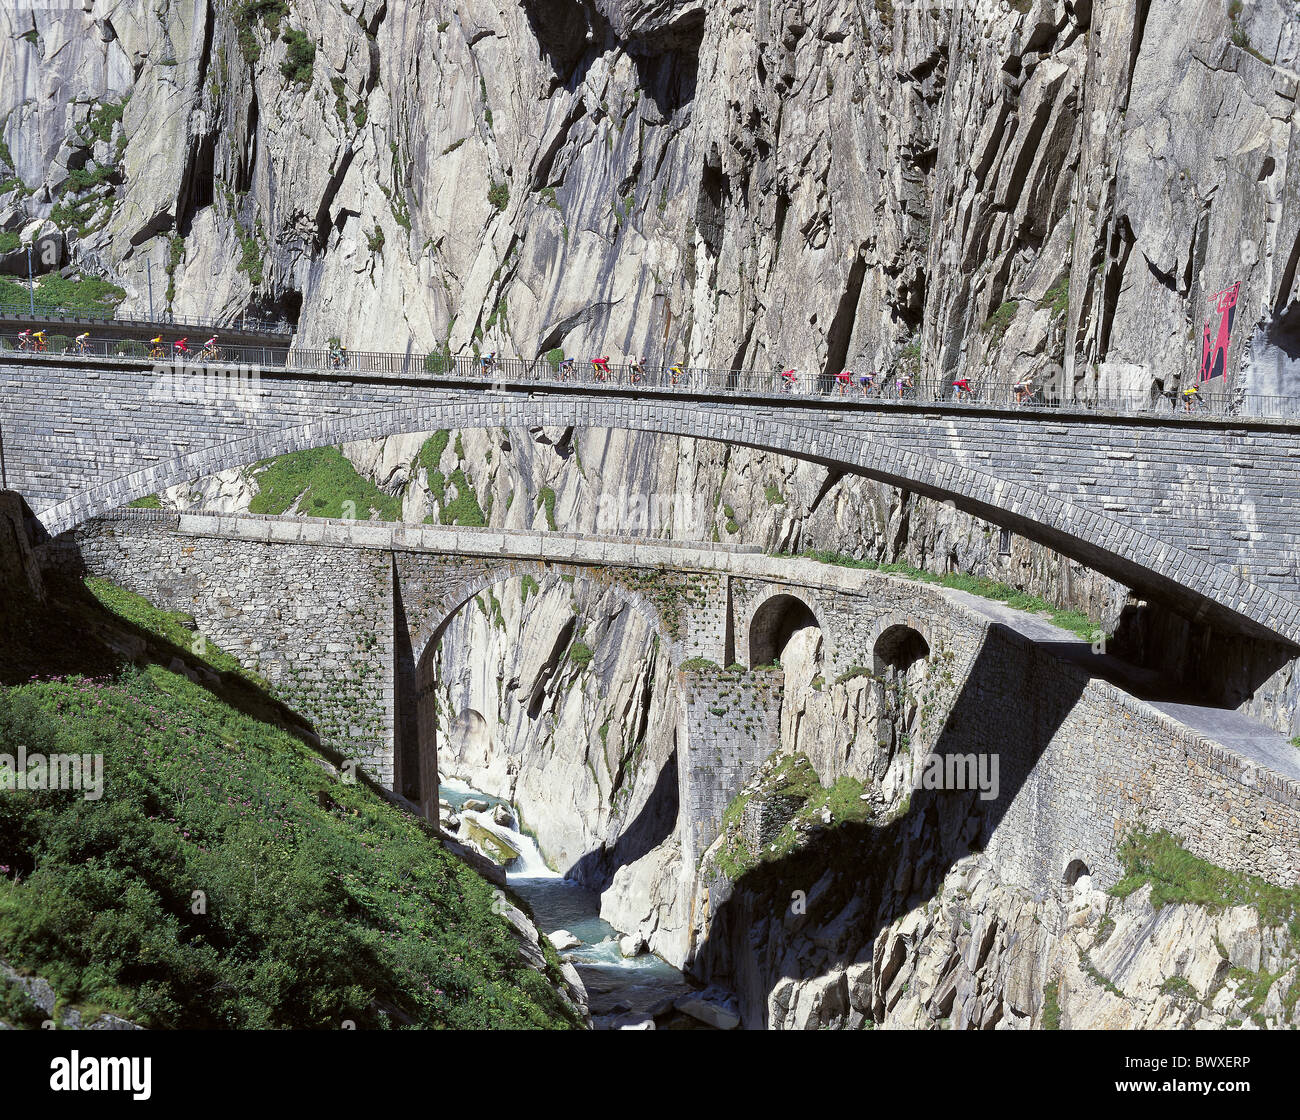 Le canton d'Uri Schollenen Gotthard Suisse Europe du débit des viaducs meadow cliff mur biker Banque D'Images